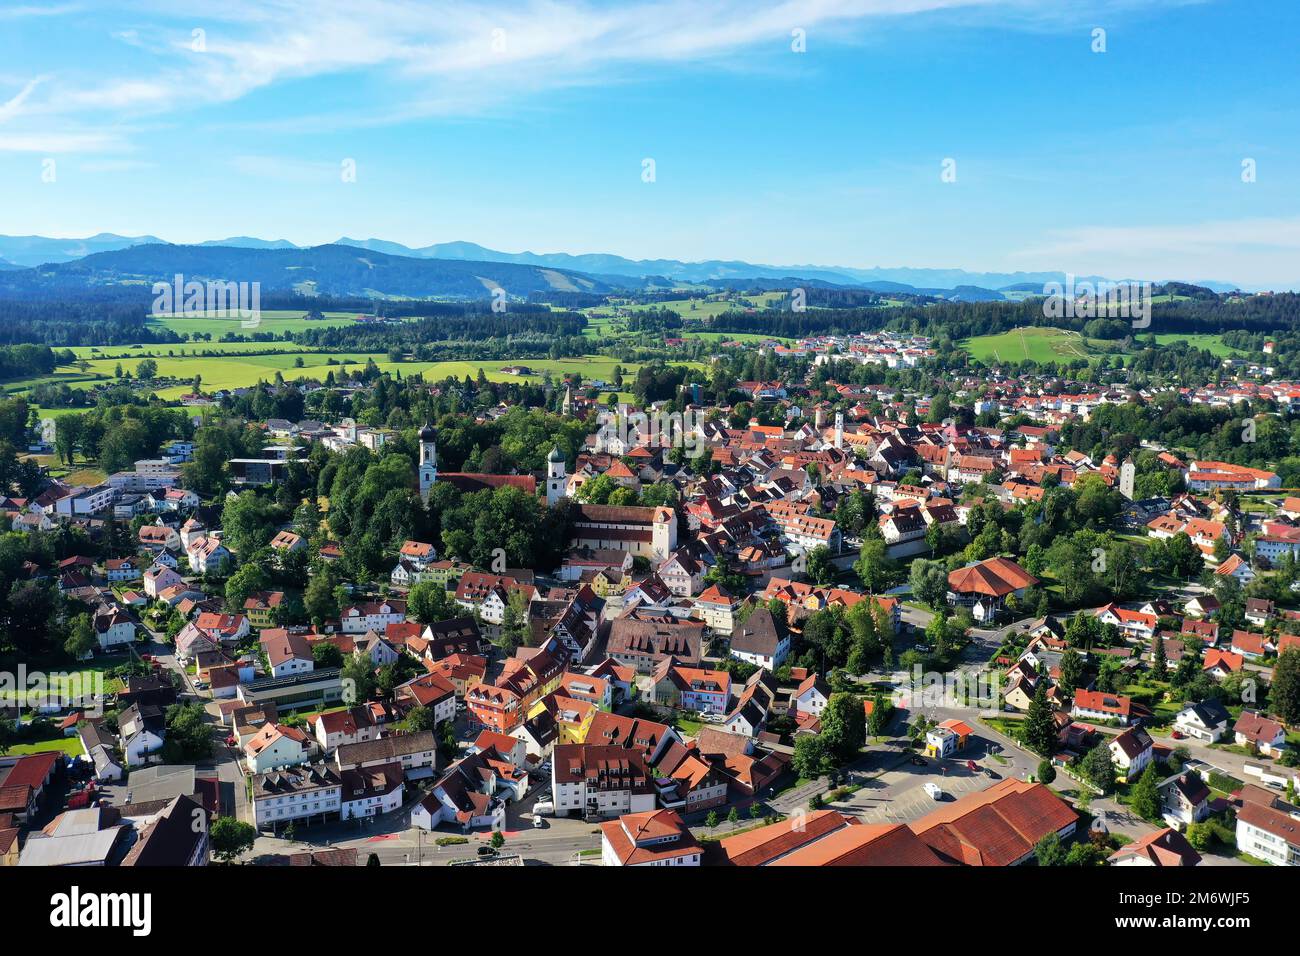 Luftbild von Isny im Allg 228 u mit Blick auf das Schloss und die historische Altstadt Isny im 